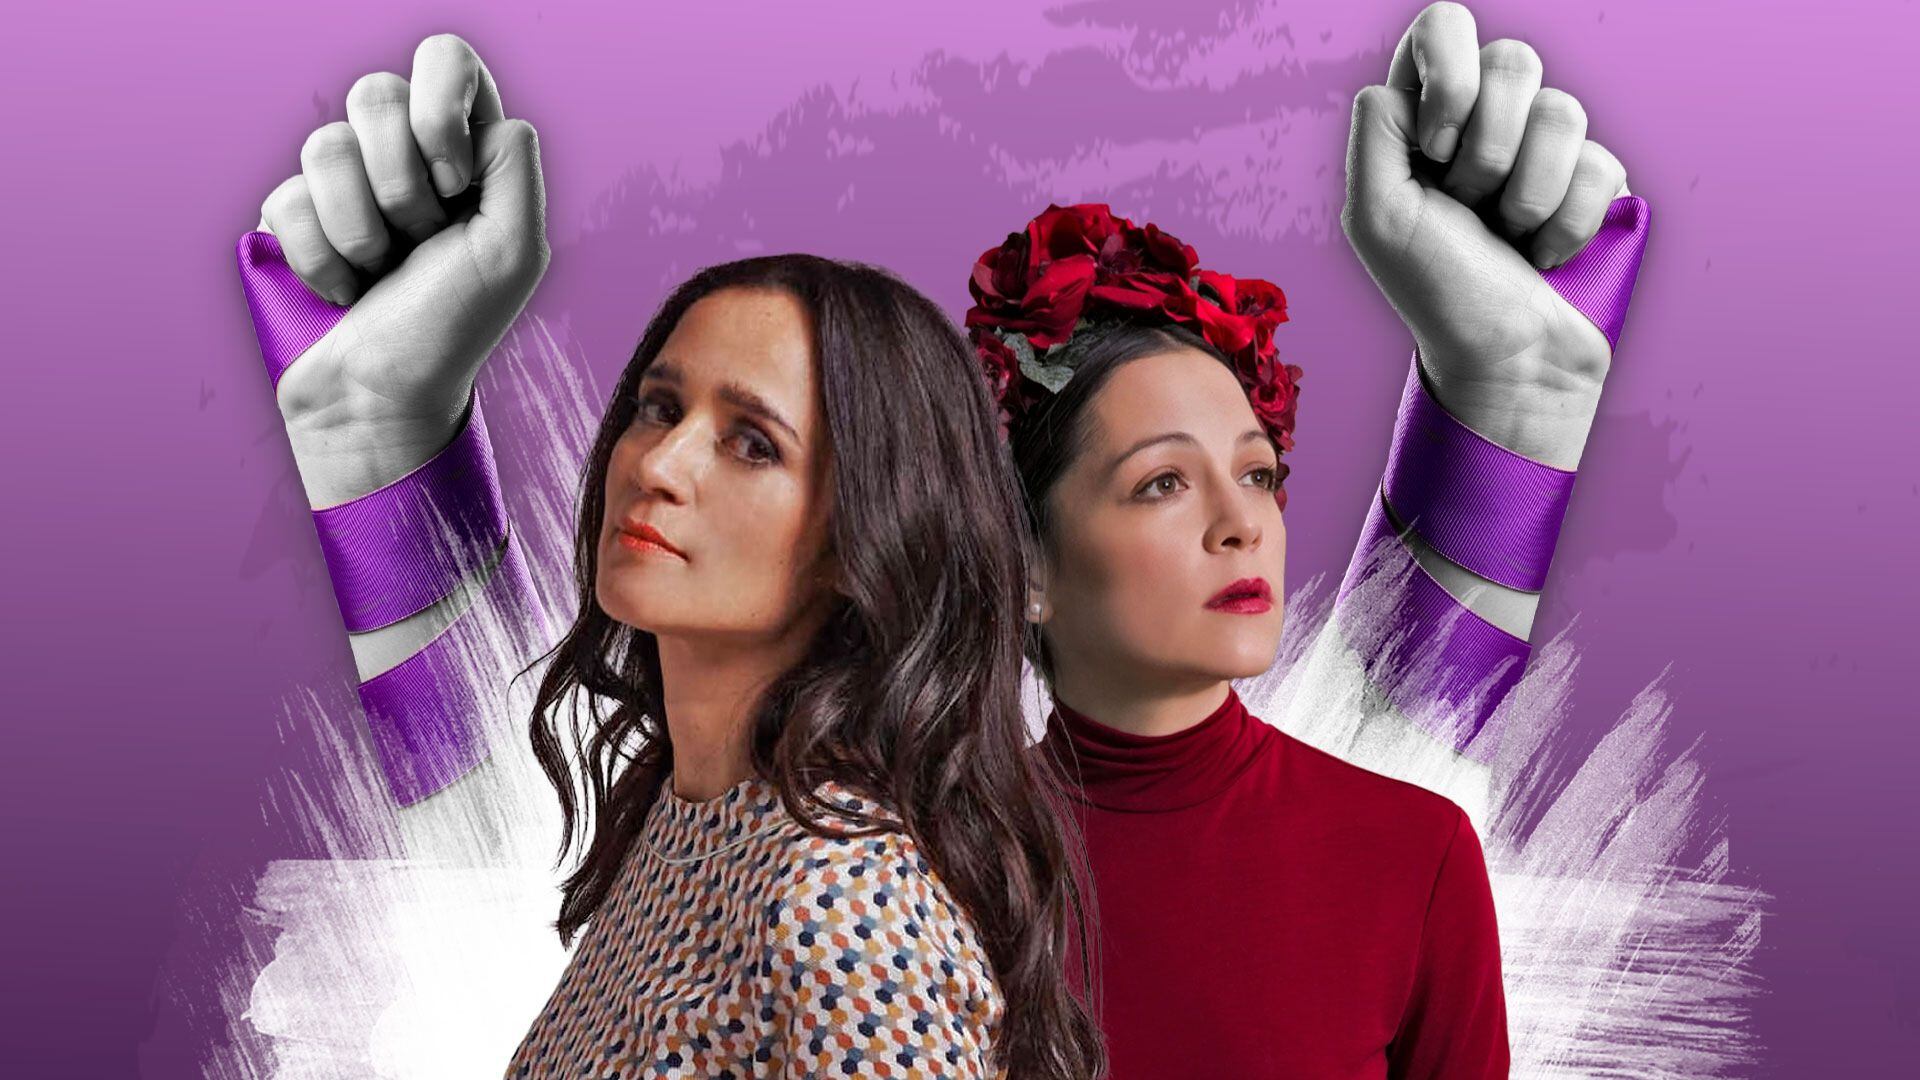 Entre las canciones consideradas como feministas figuran de Julieta Venegas, Silvana Estrada, Natalia Lafourcade, entre otras. (Jesús Avilés/Infobae)